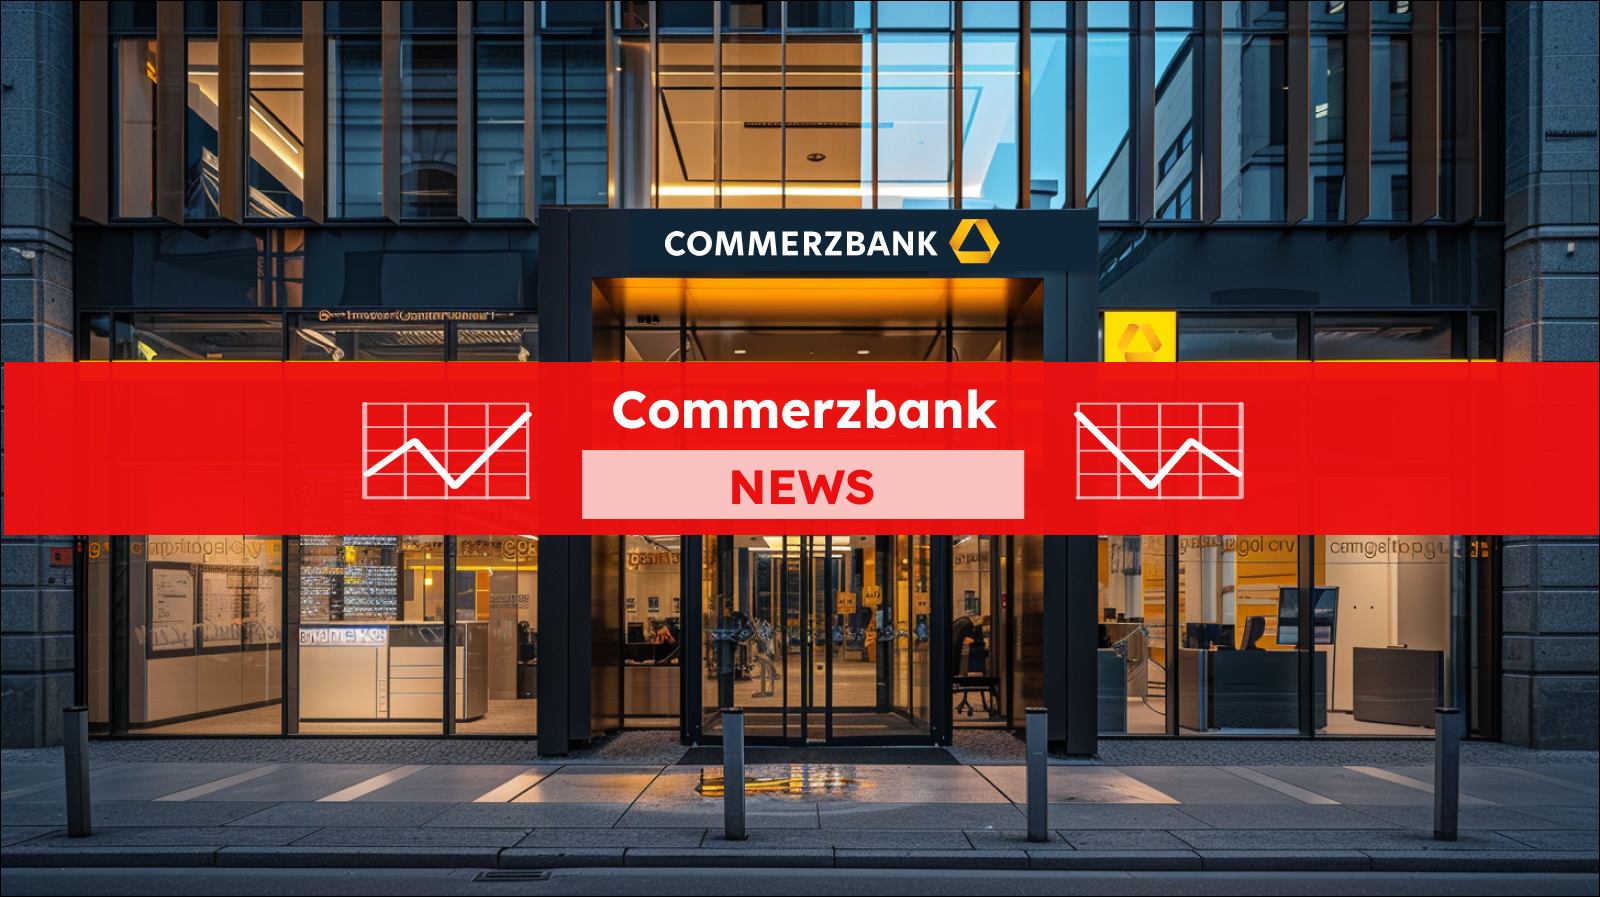 Eingangstür einer Commerzbank-Filiale am Abend mit dem gelben Logo und Schriftzug, mit einem Commerzbank NEWS Banner